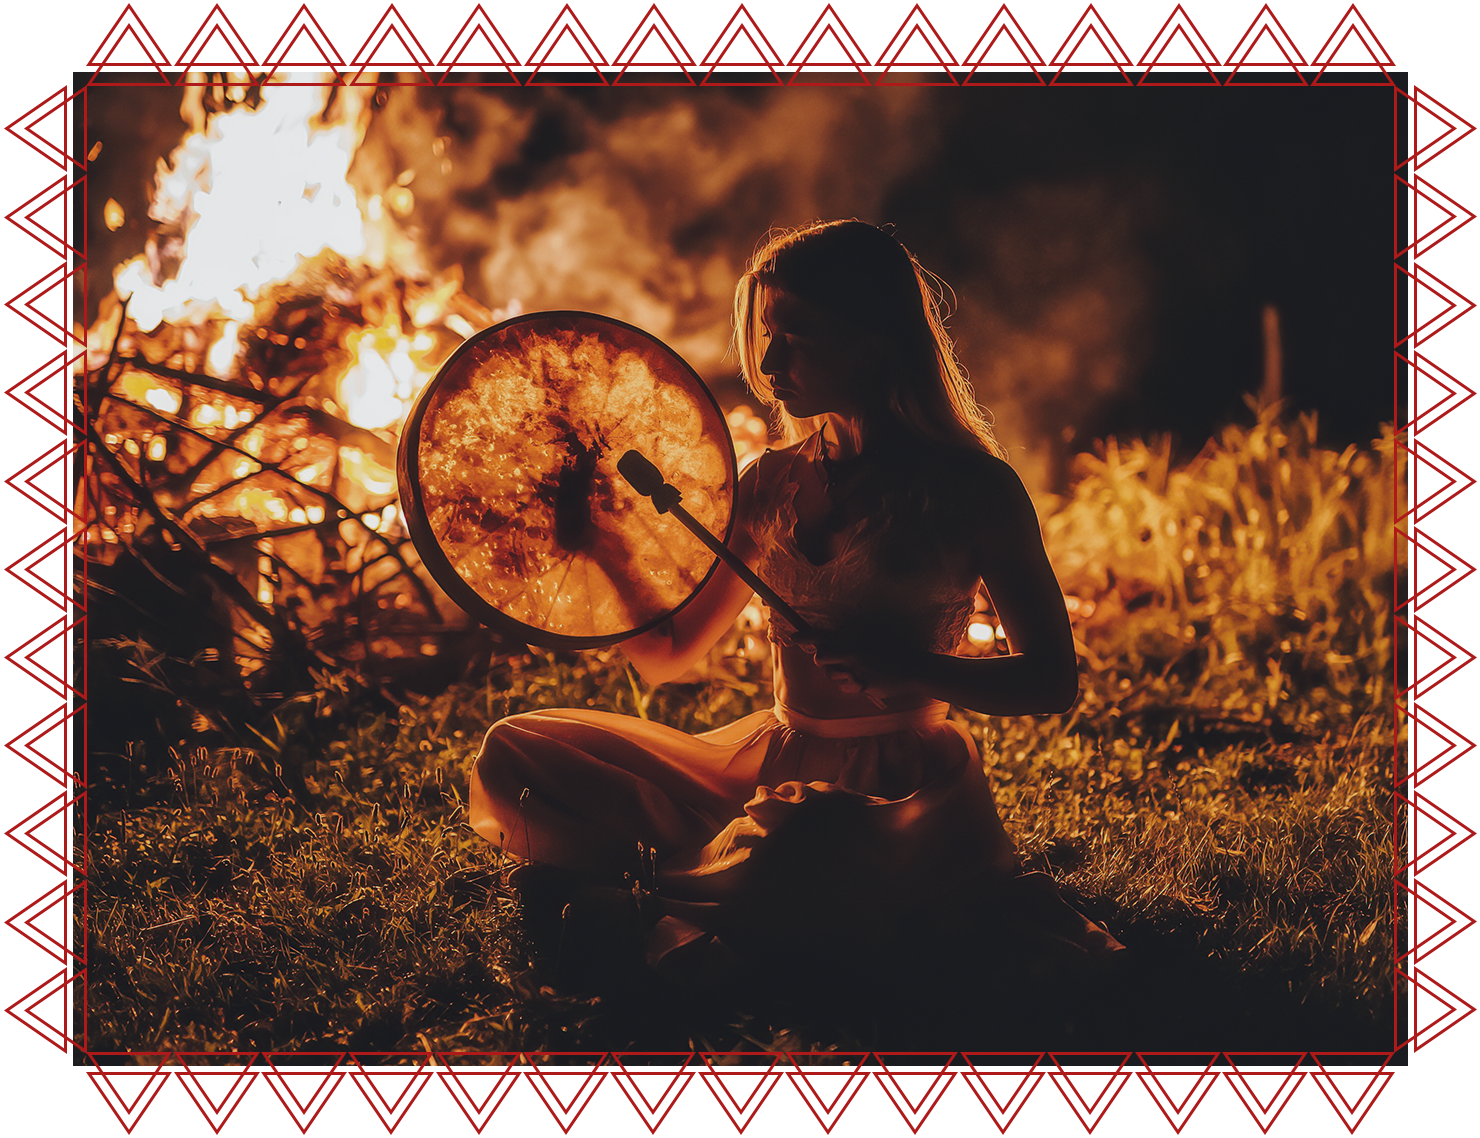 IACFS Schamanisches Wissen - Beltane - Fest des Sommerbeginns und der Fruchtbarkeit - Frau mit eine Trommel in der Hand sitzt vor einem Lagerfeuer